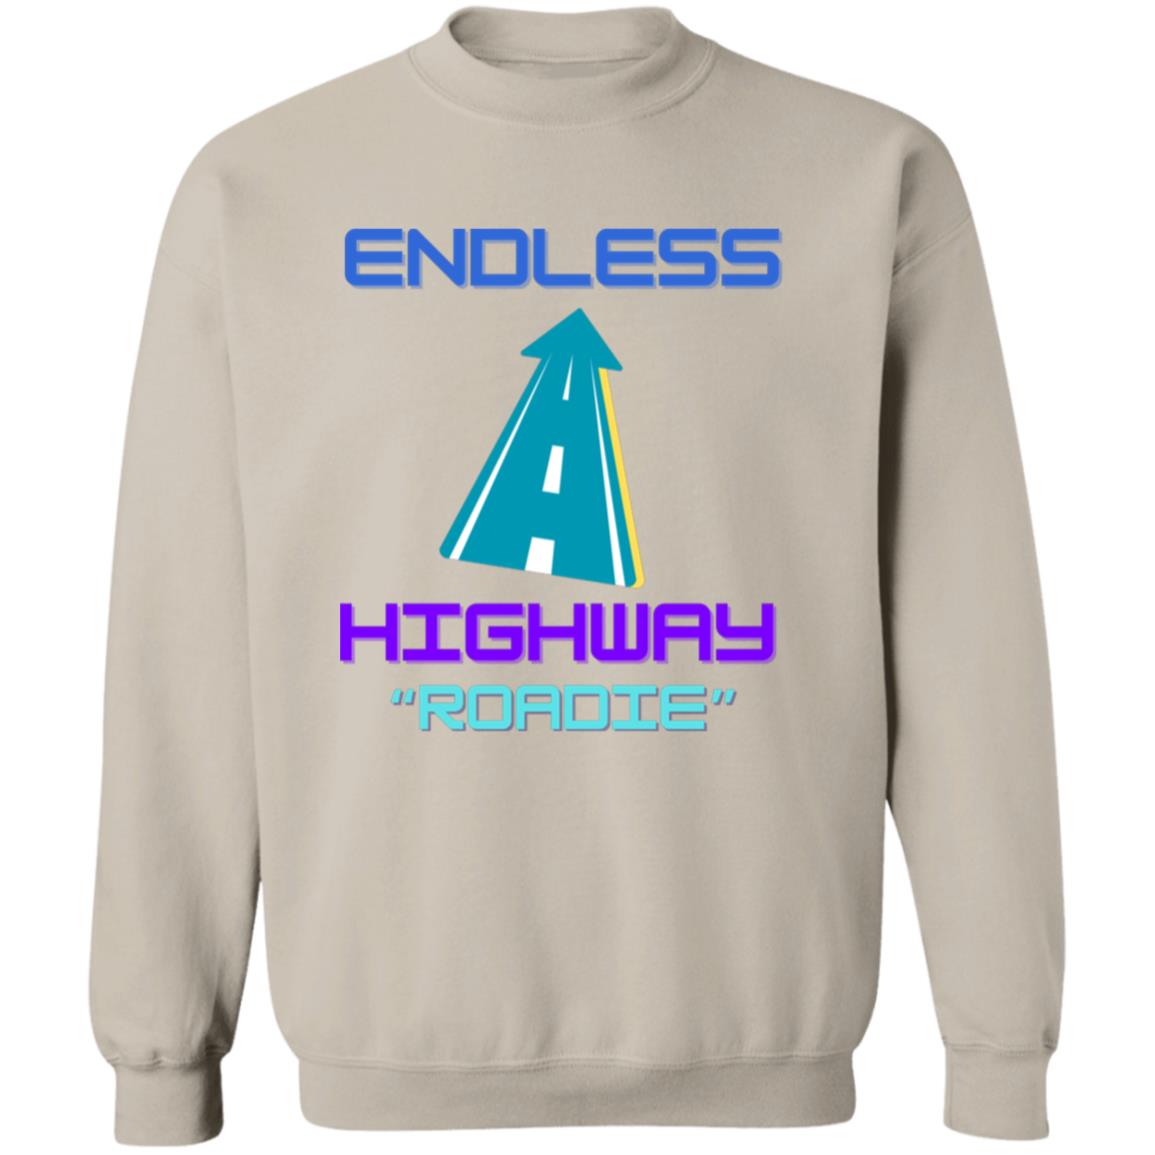 Endless Highway "Roadie" Crewneck Pullover Sweatshirt